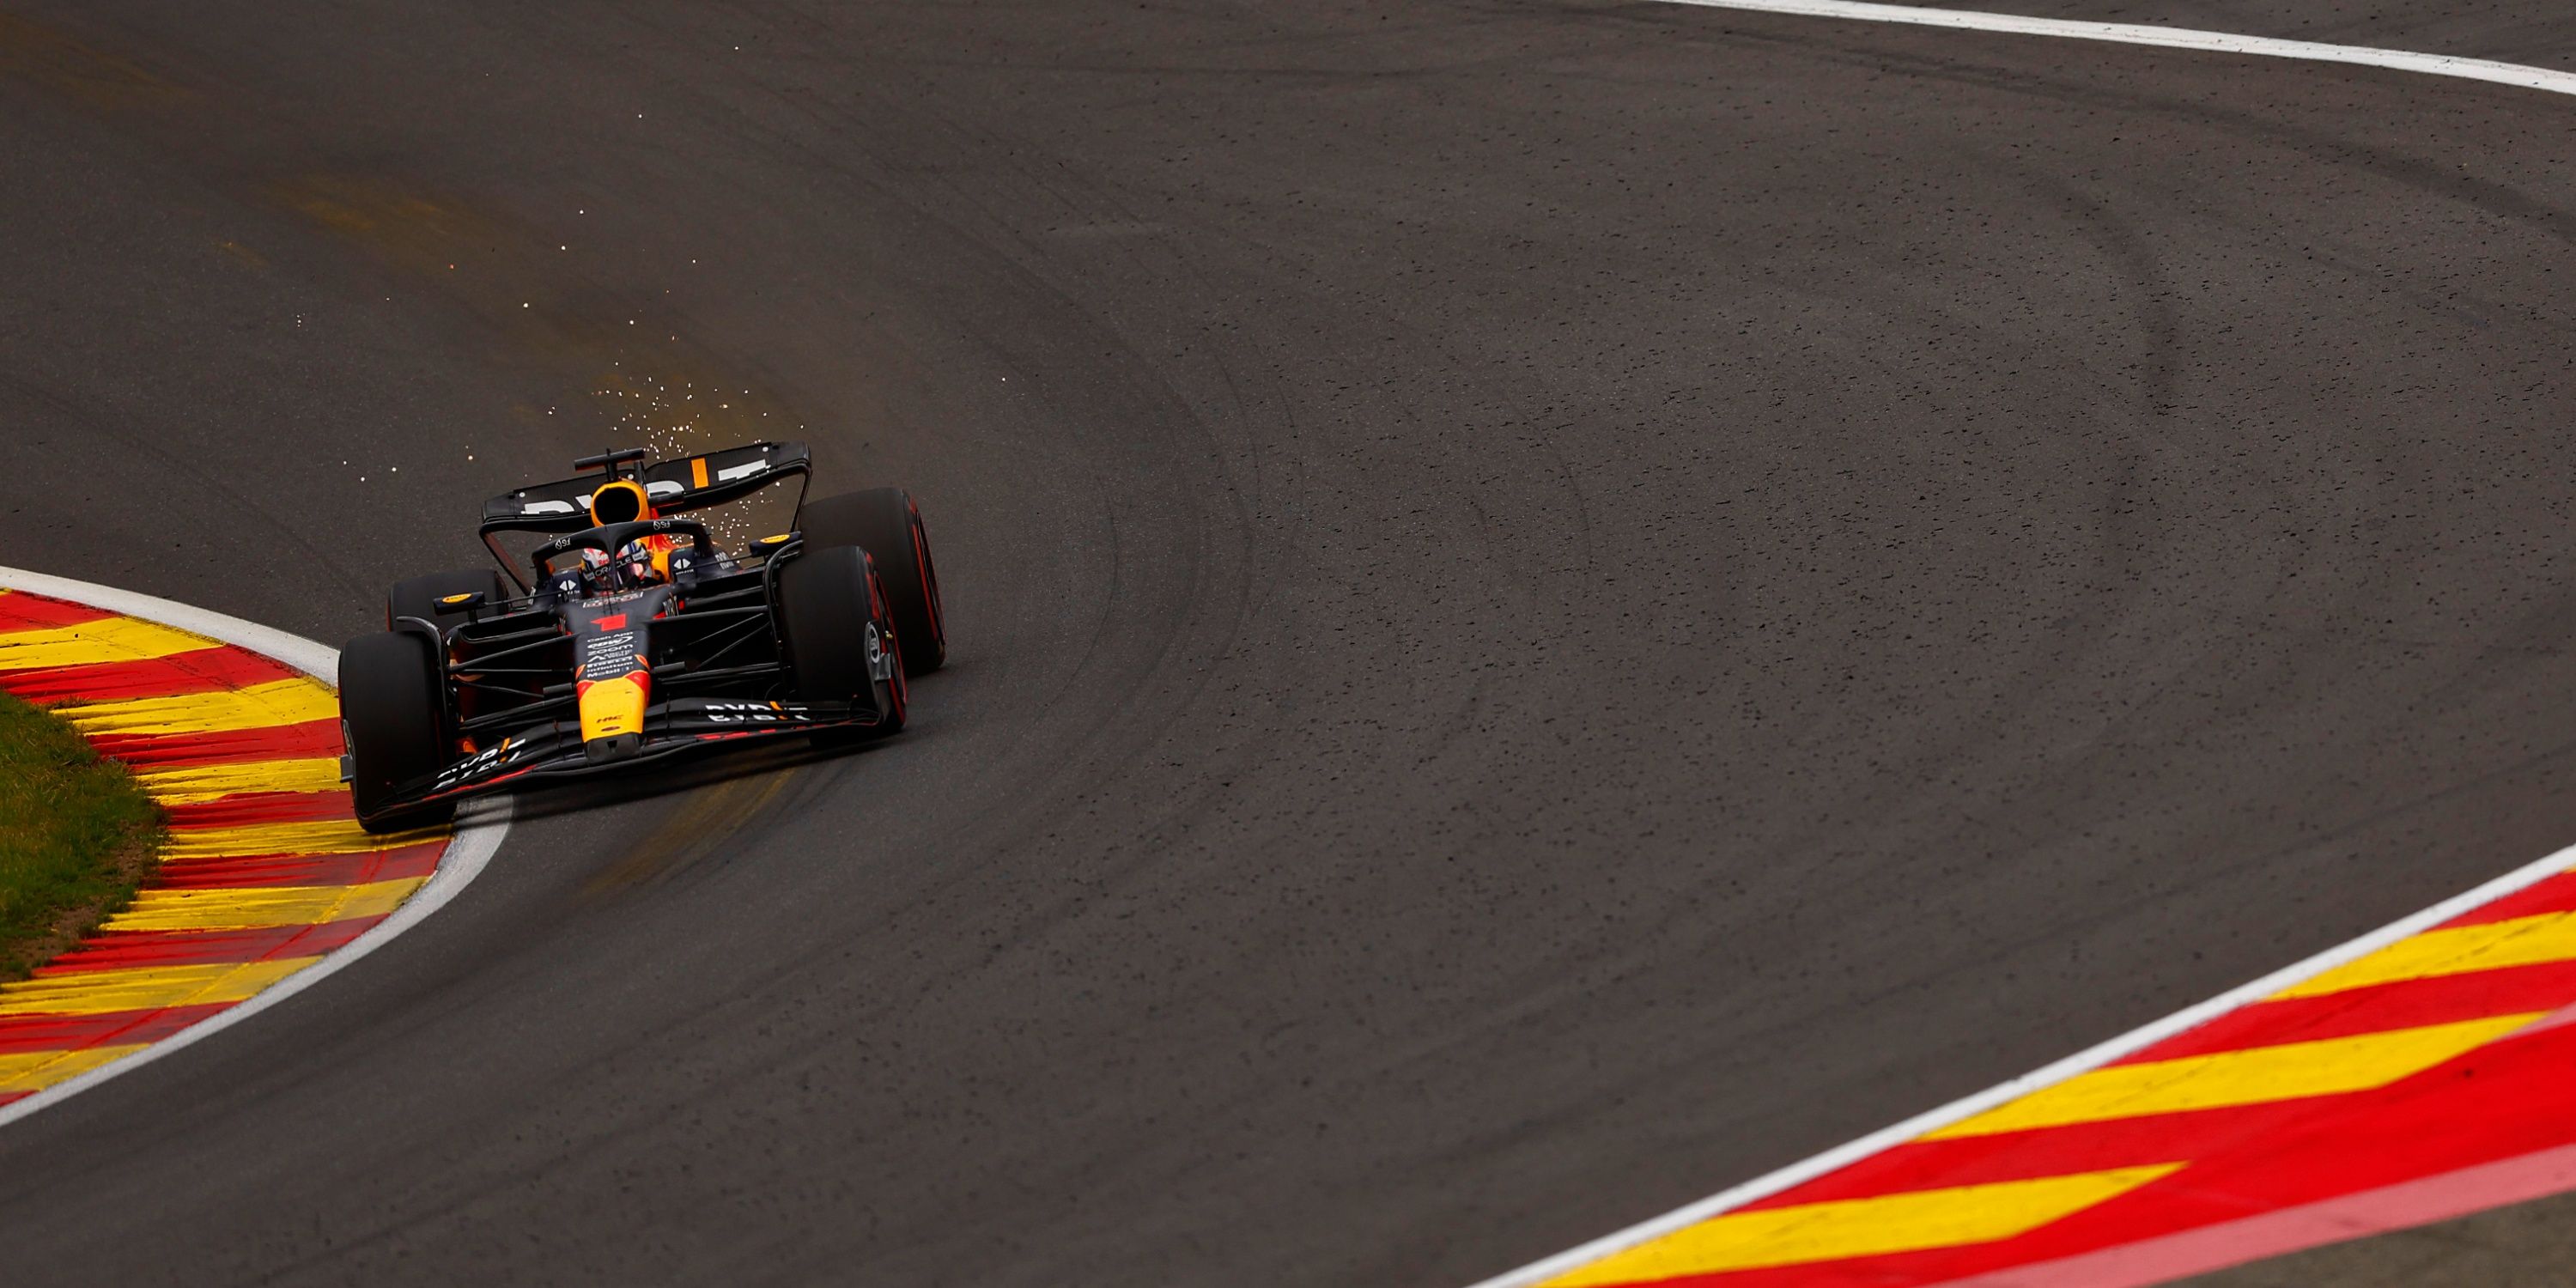 Max Verstappen wins the Belgian Grand Prix